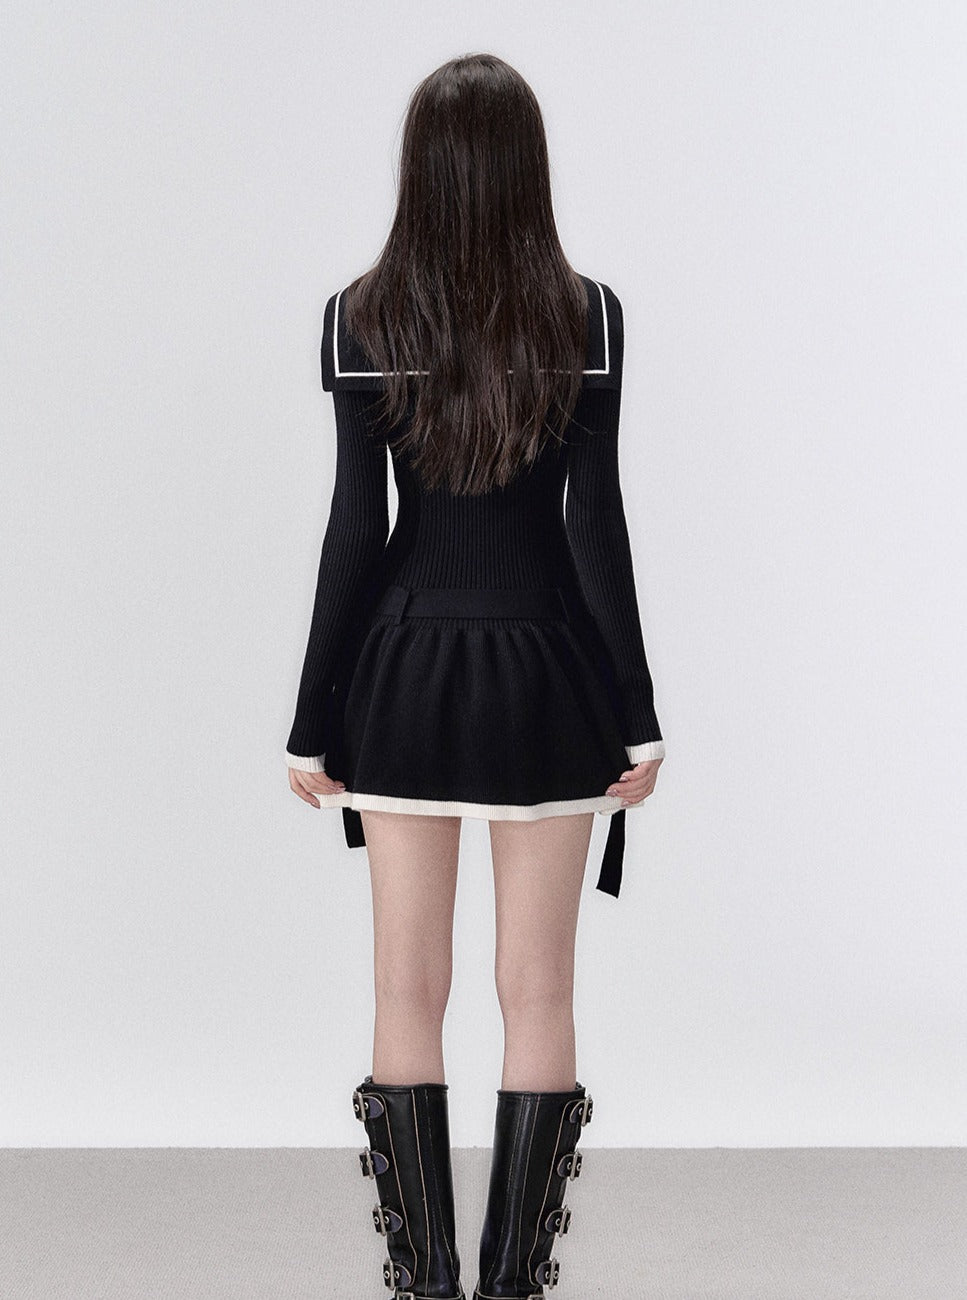 Dark black knit dress